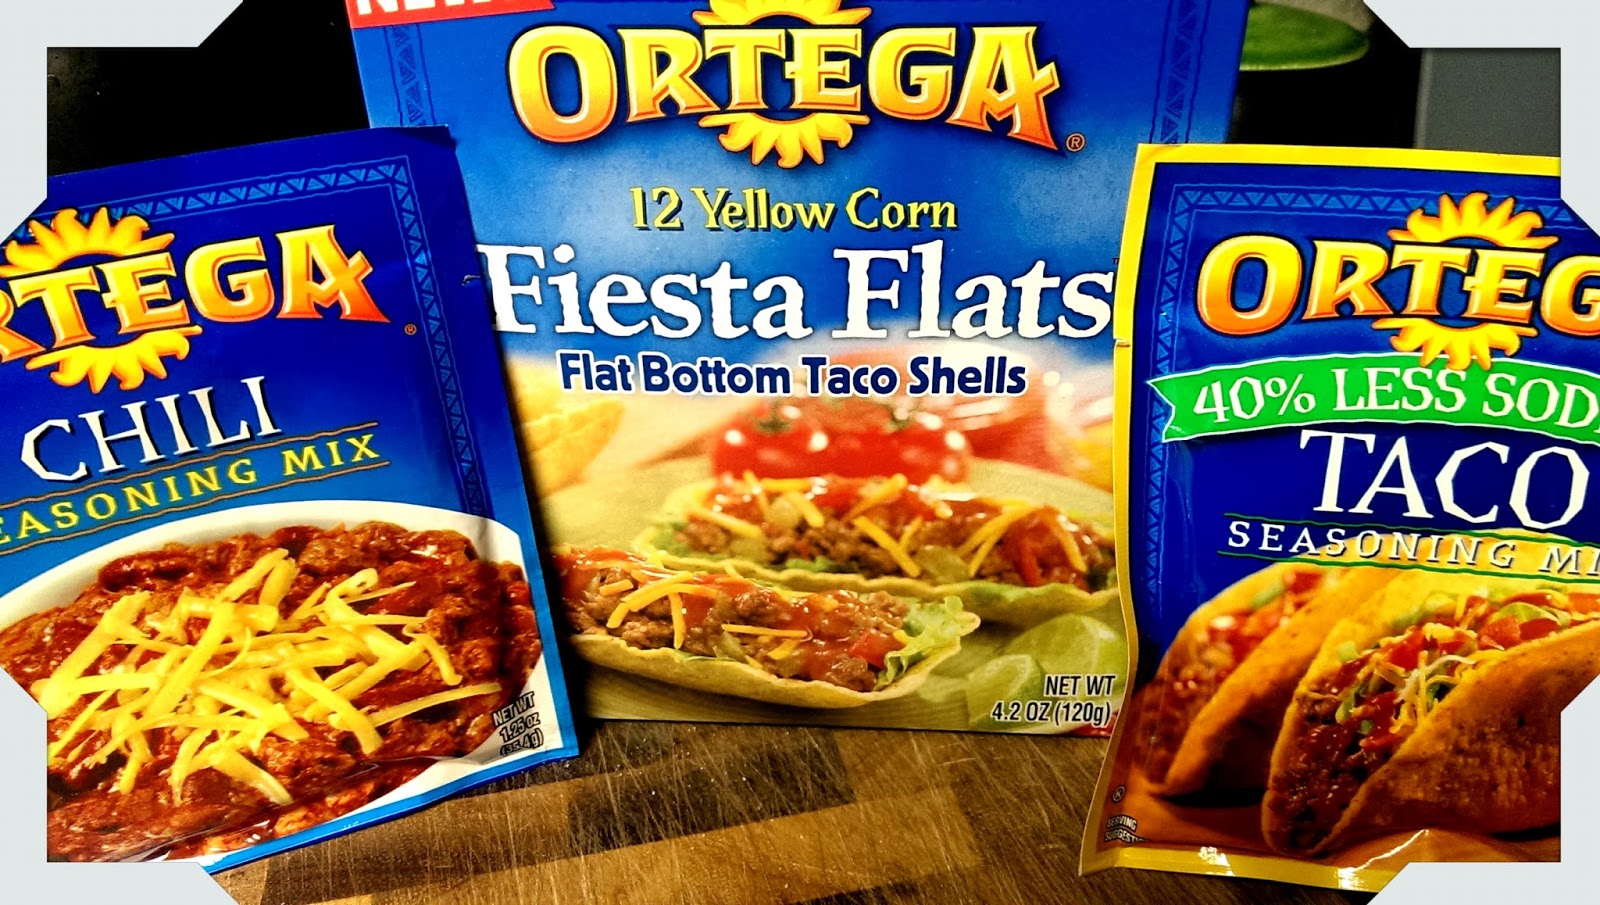 Ortega Ortega Presents The Ultimate Taco Stadium - Super Bowl Party Recipes